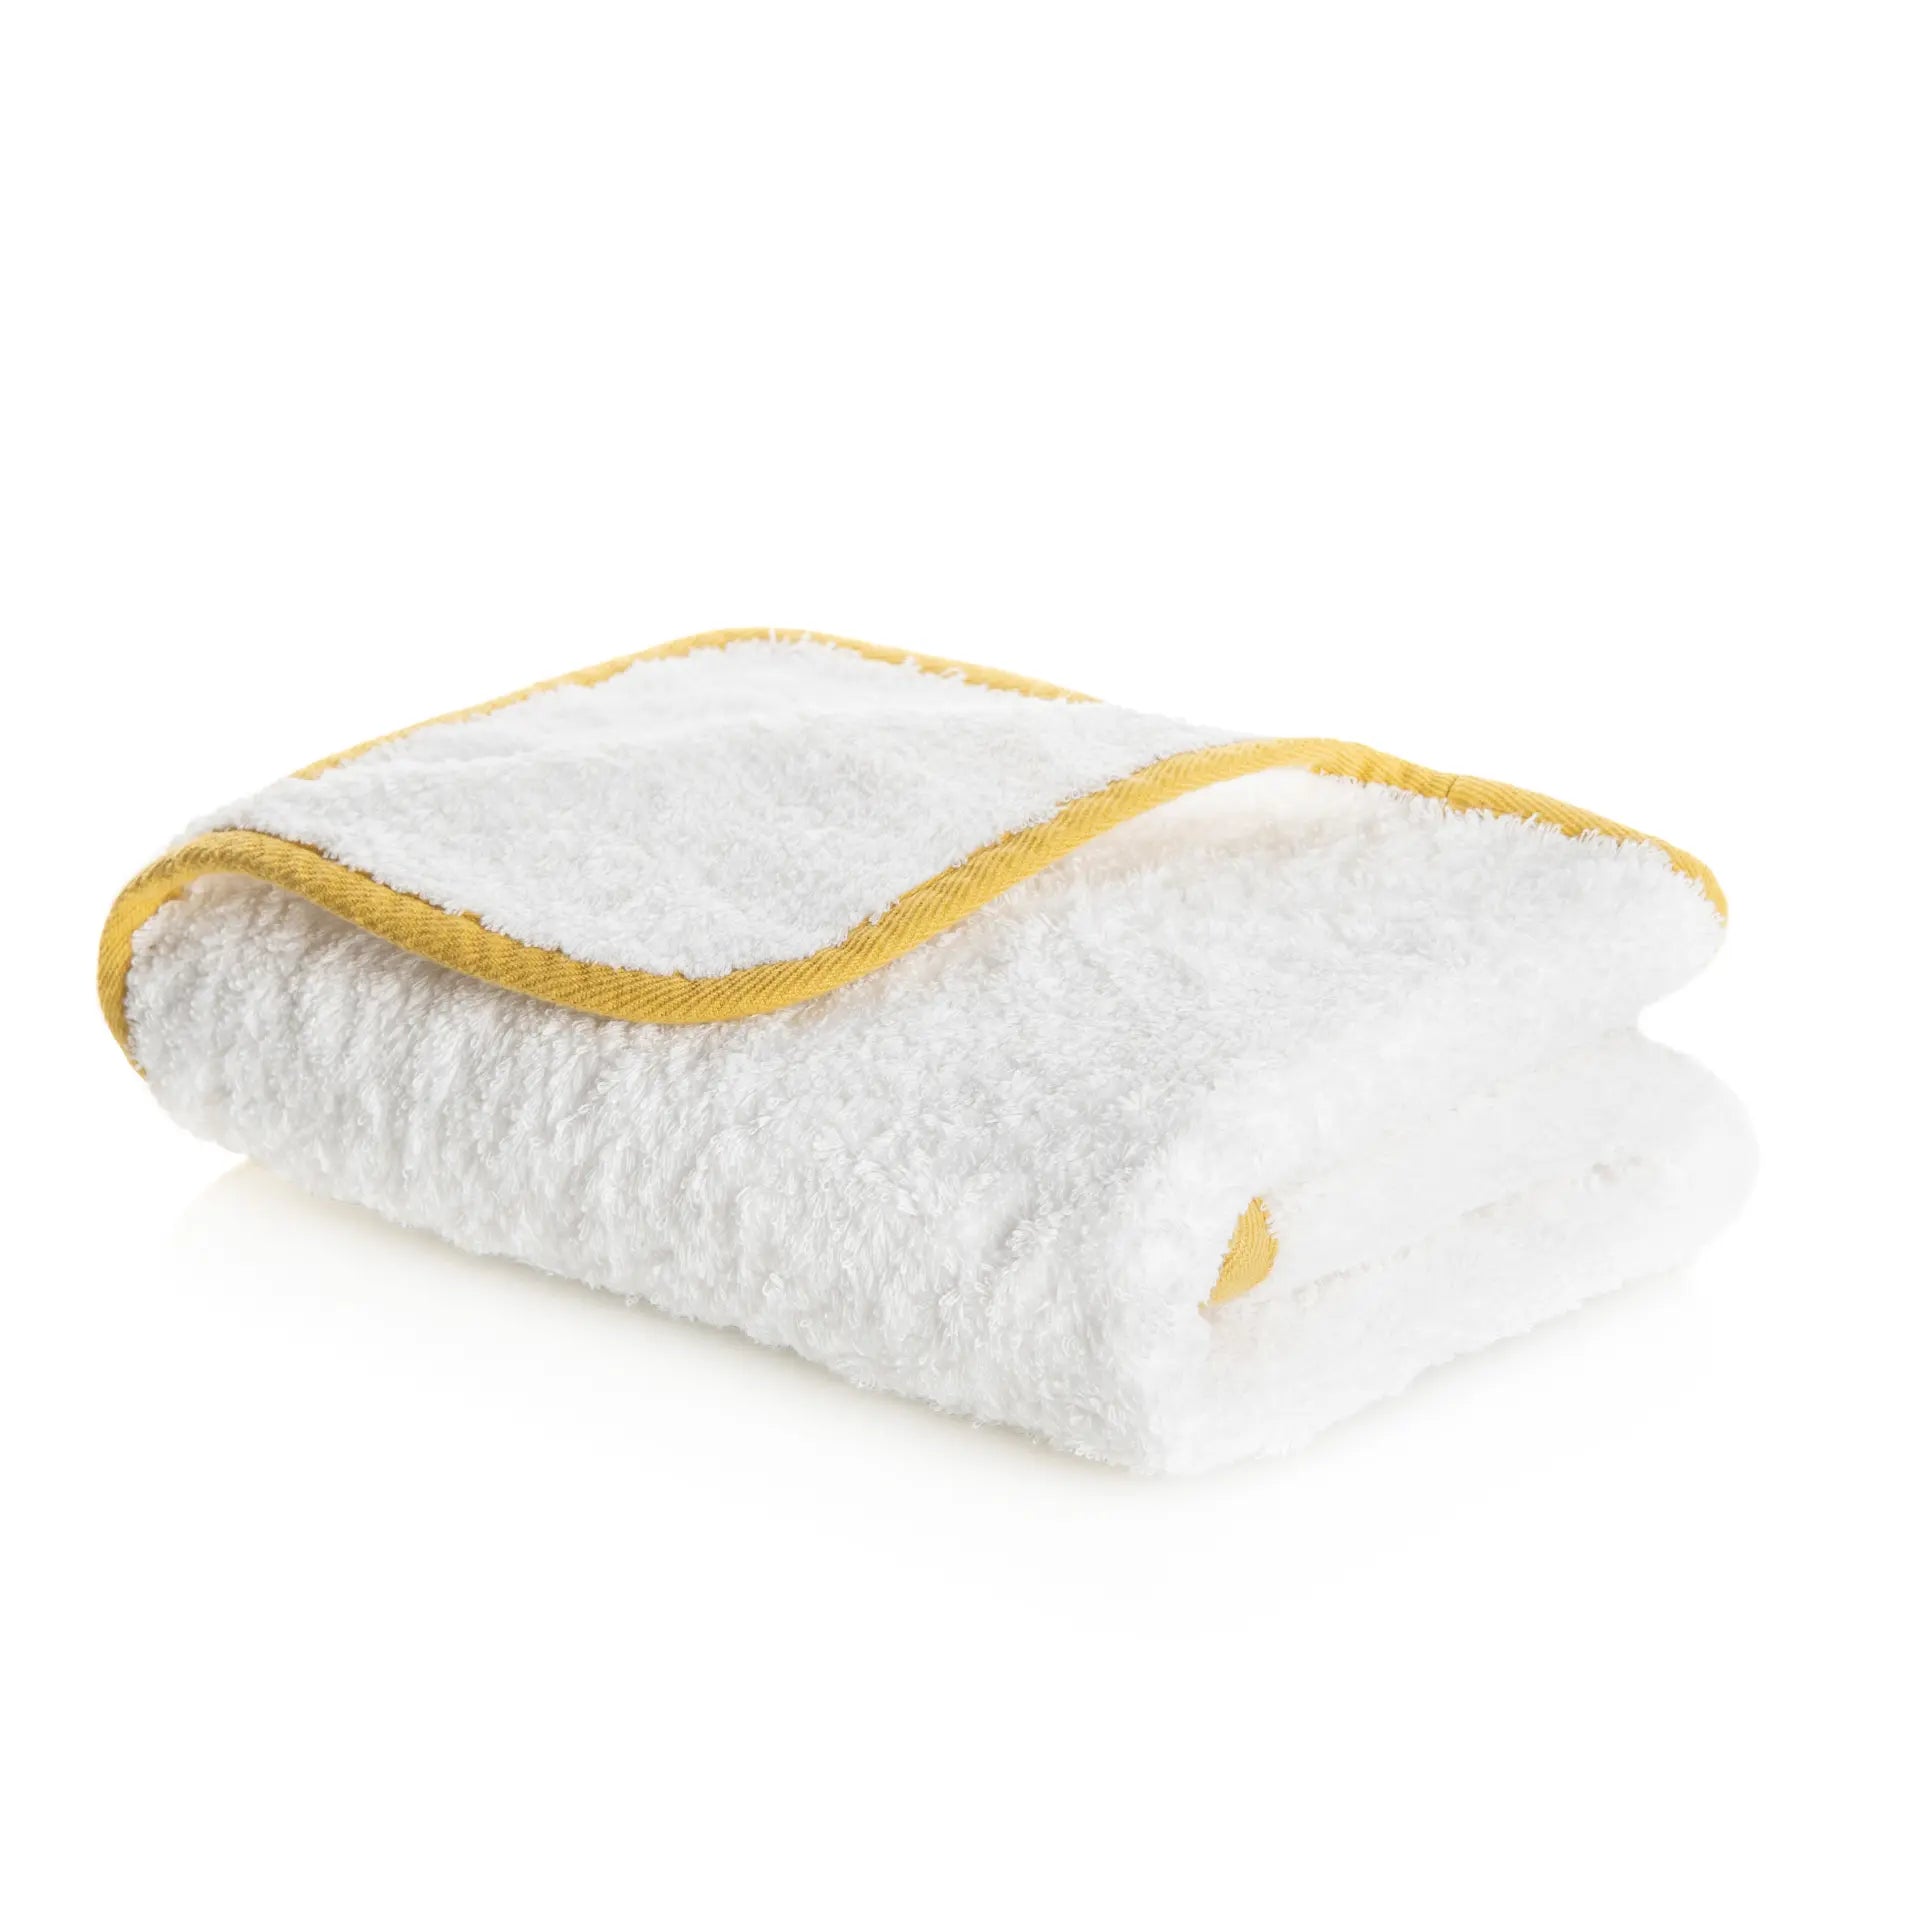 Graccioza Portobello Towel in Gold